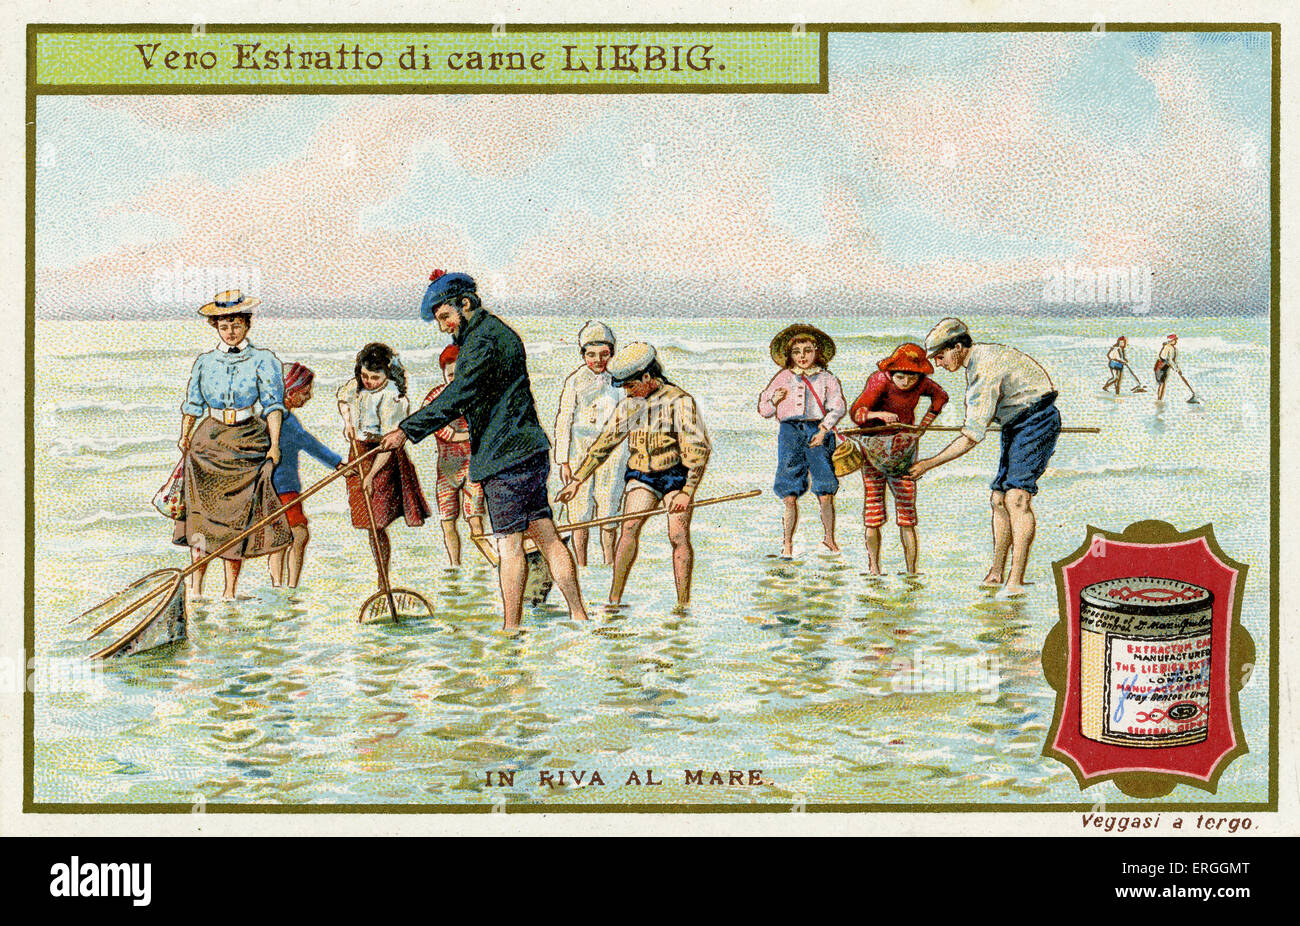 Am Meer: Fischen mit Netzen. Illustration von 1910. Liebig-Sammelkartenspiel (Serie: In Riva Al Mare). Stockfoto